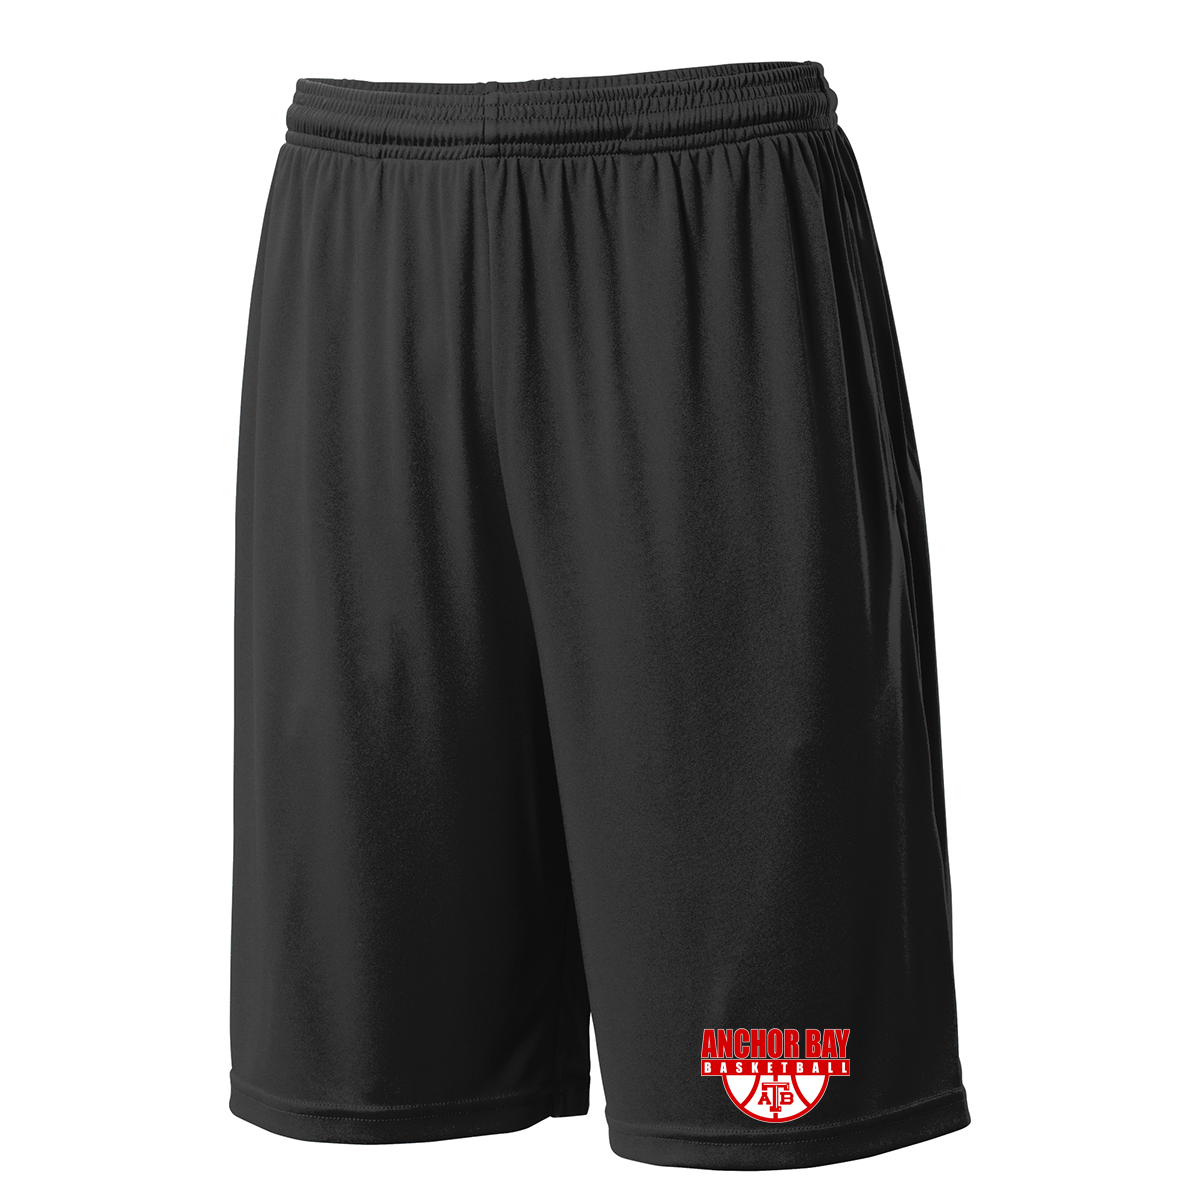 Anchor Bay Basketball Shorts